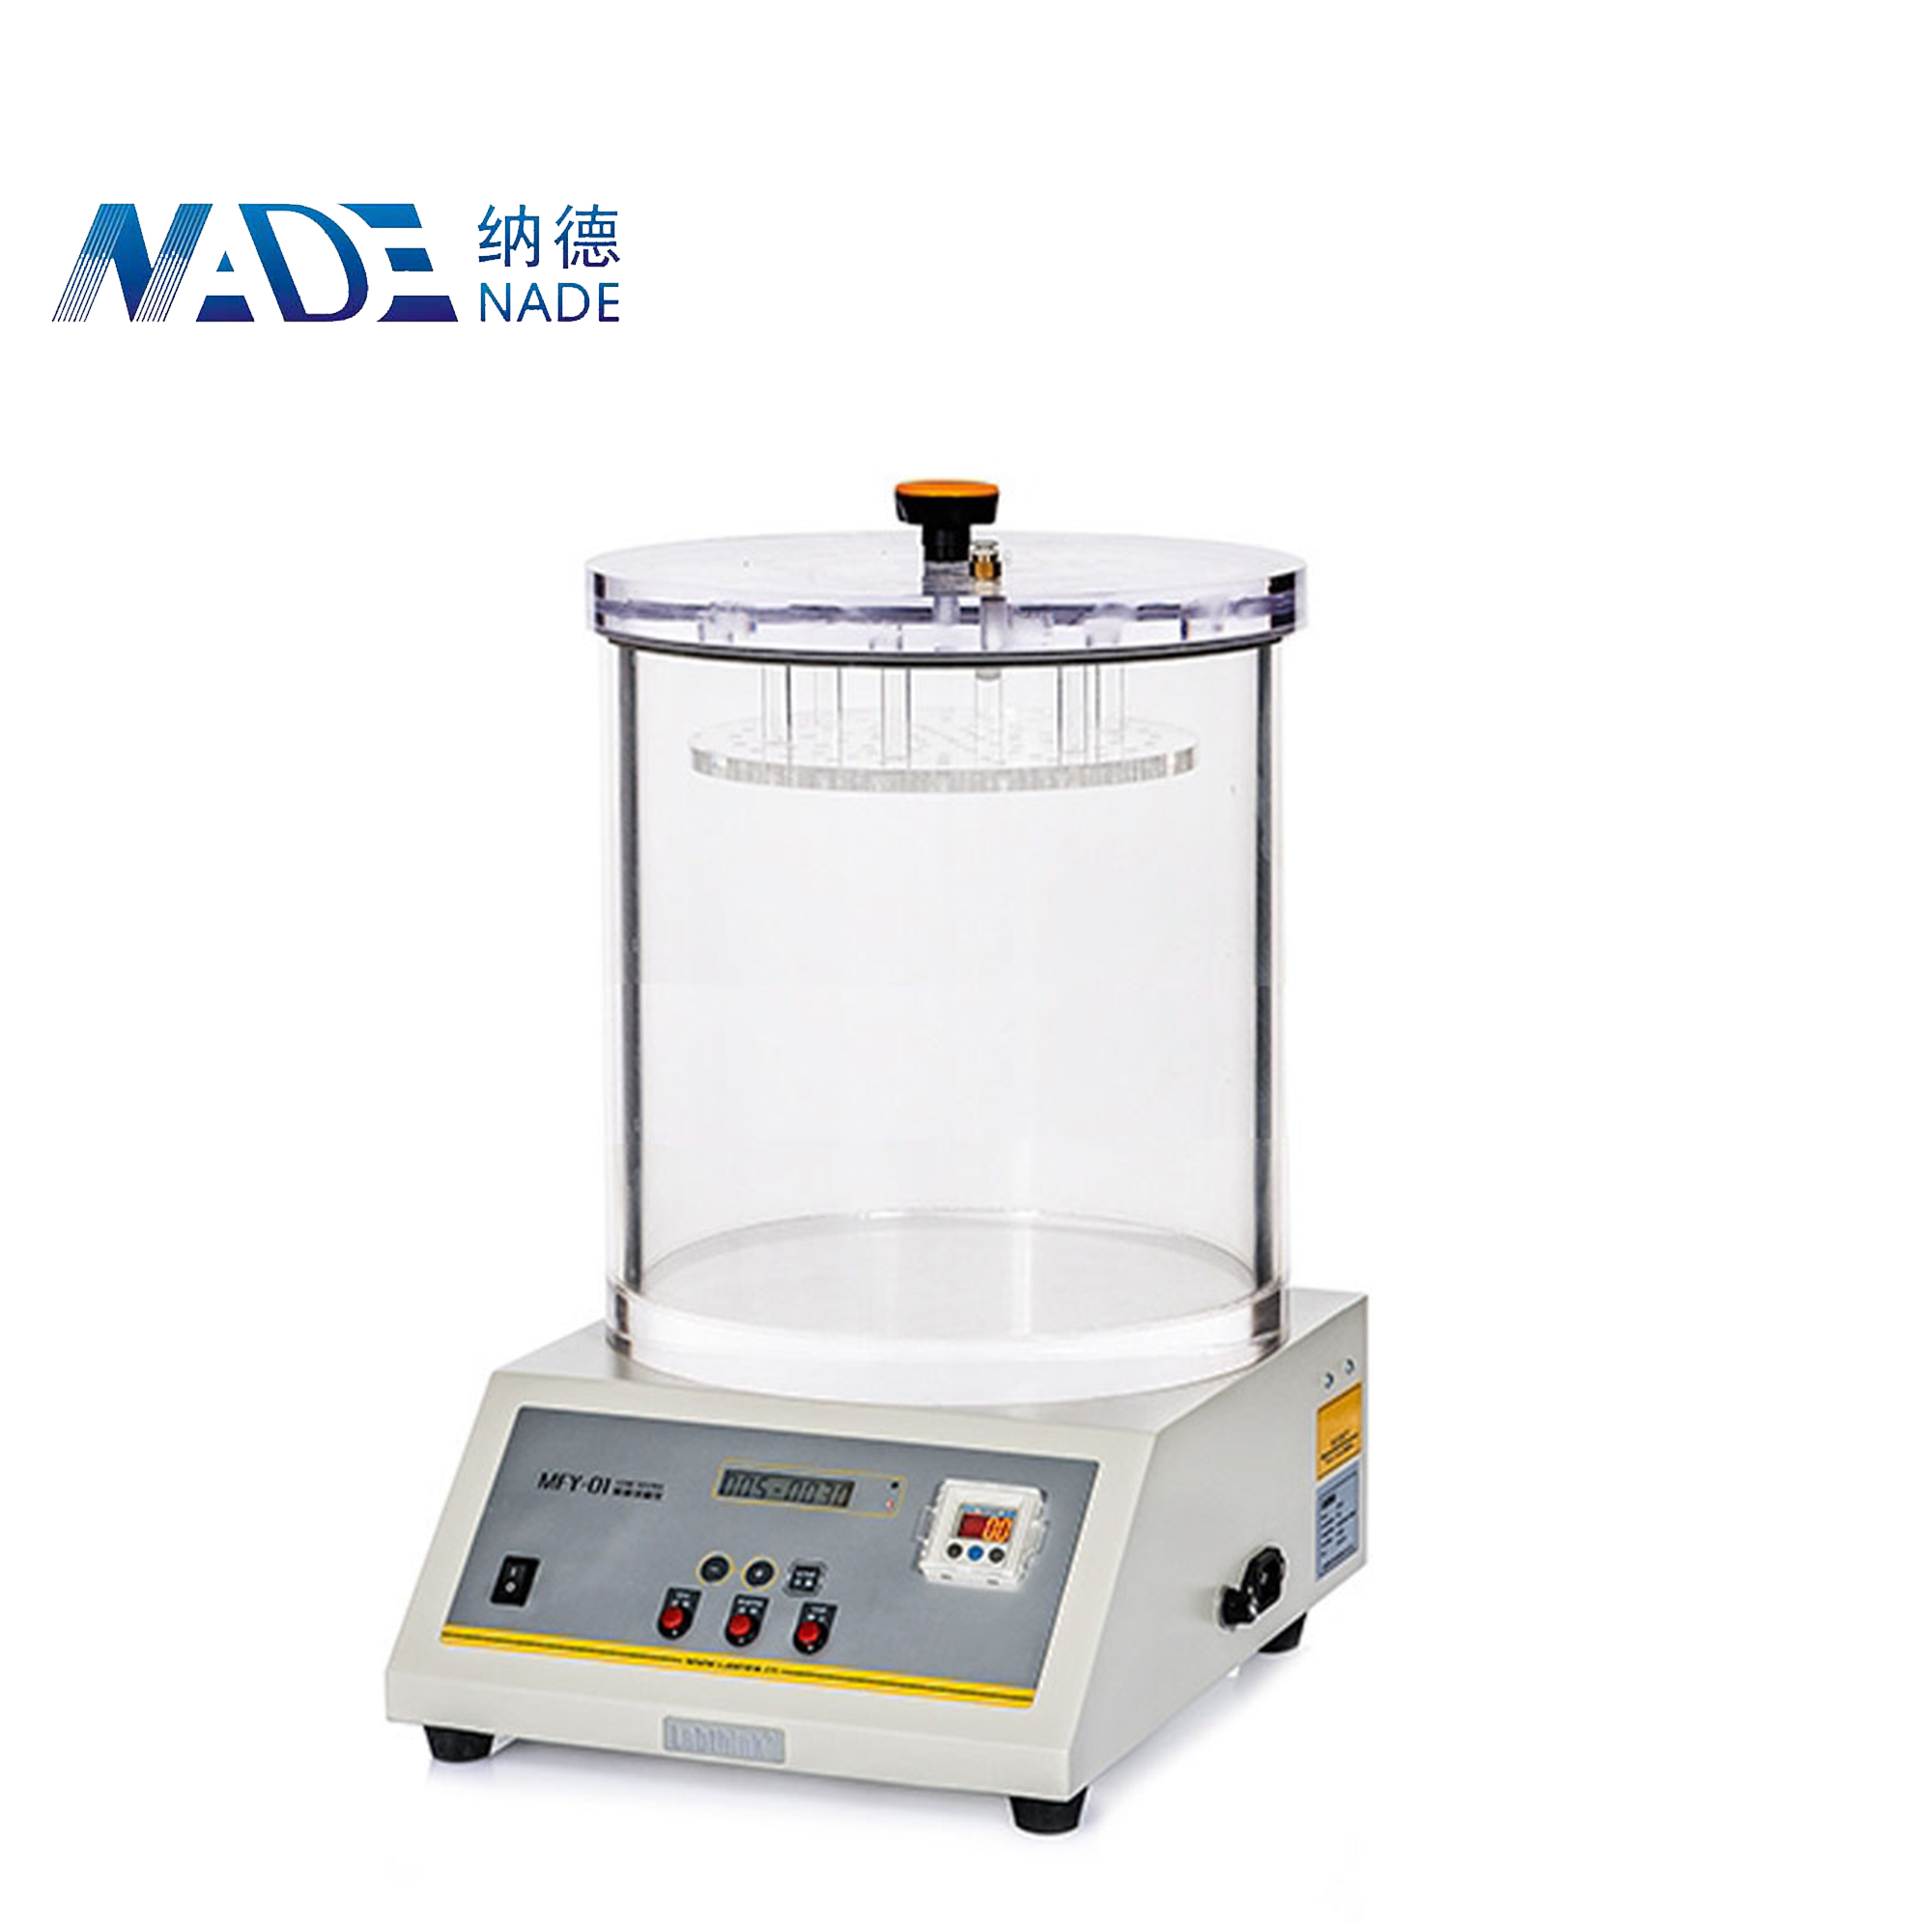 Nade MFY-01 Plastic Bottle and Vacuum Packaging Leak Testing Machine, Air Leakage Tester